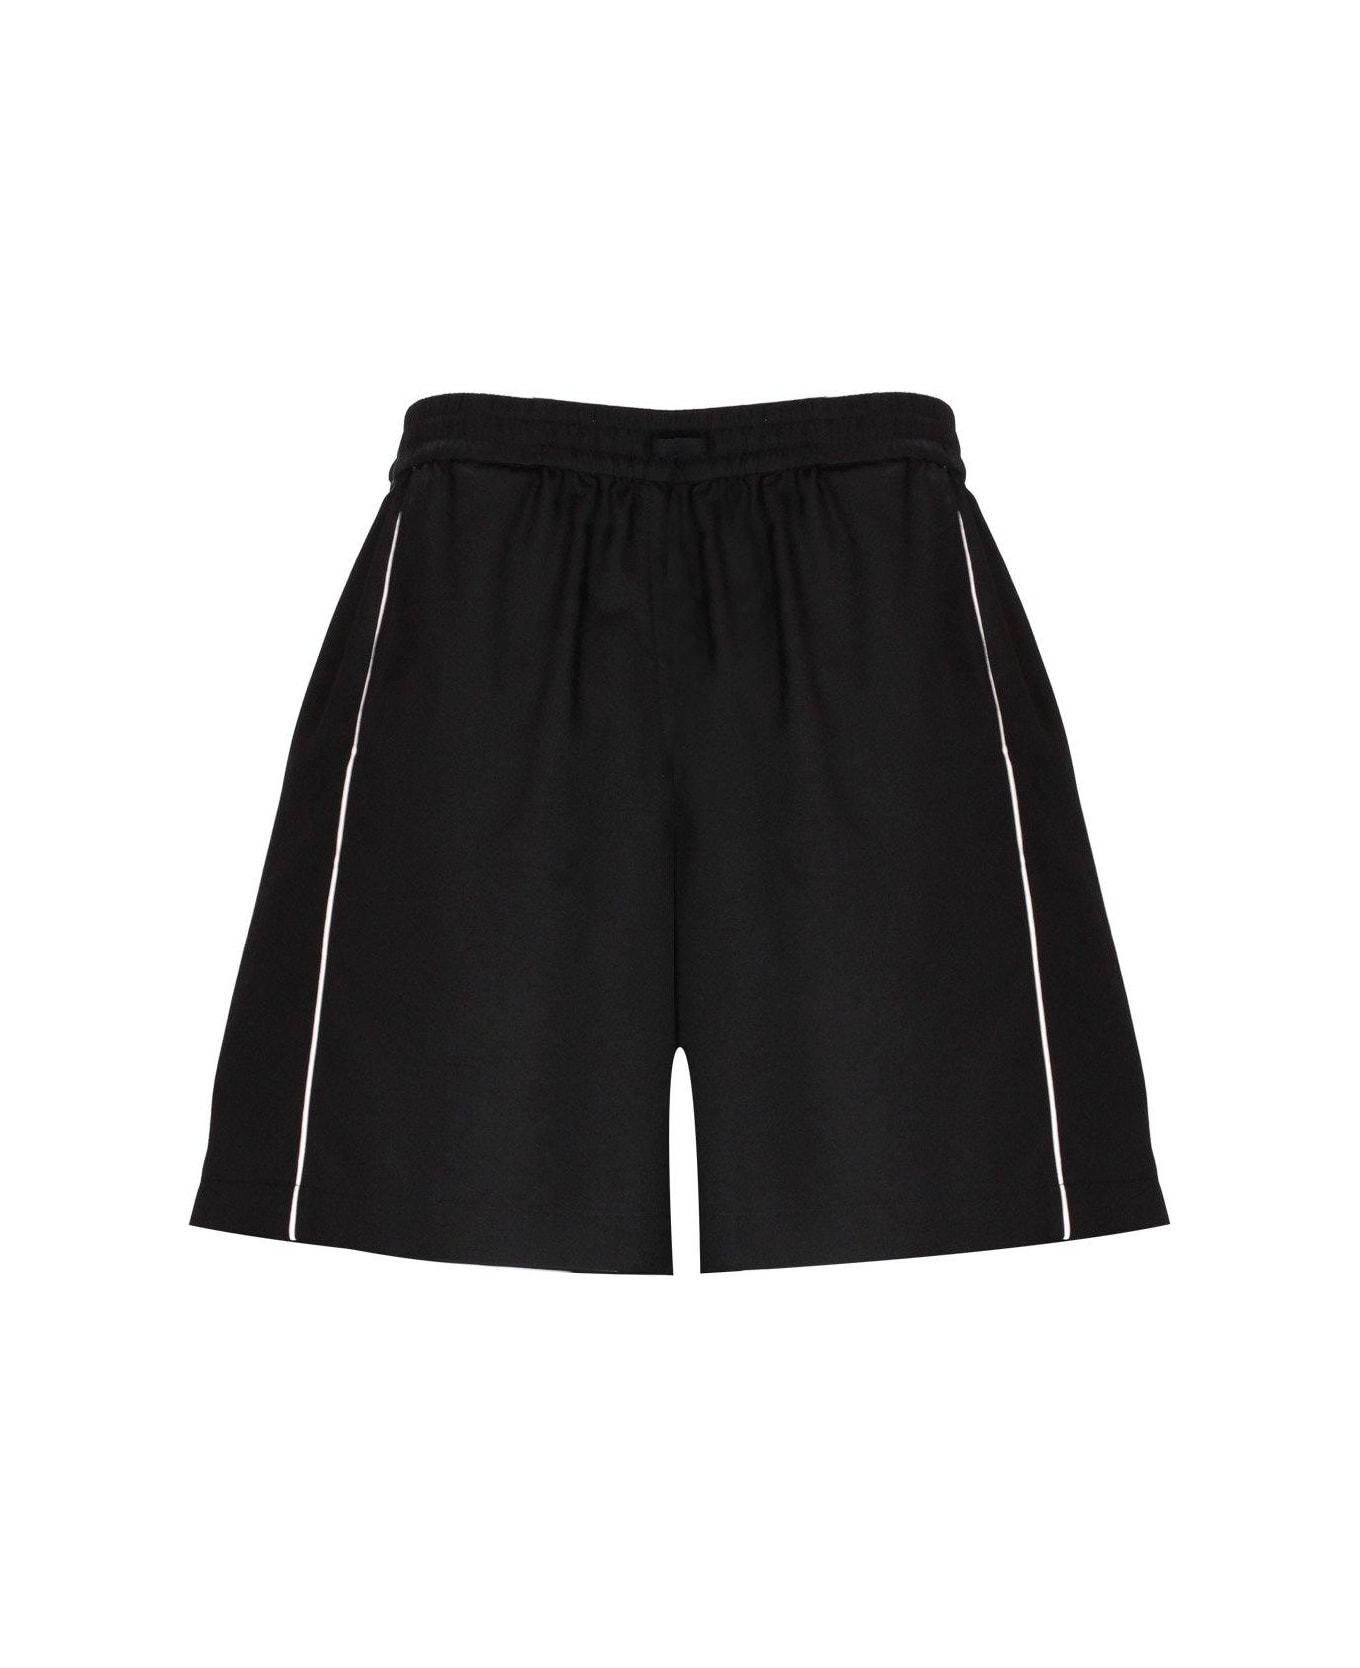 Valentino Side-stripe Drawstring Shorts - Black ショートパンツ